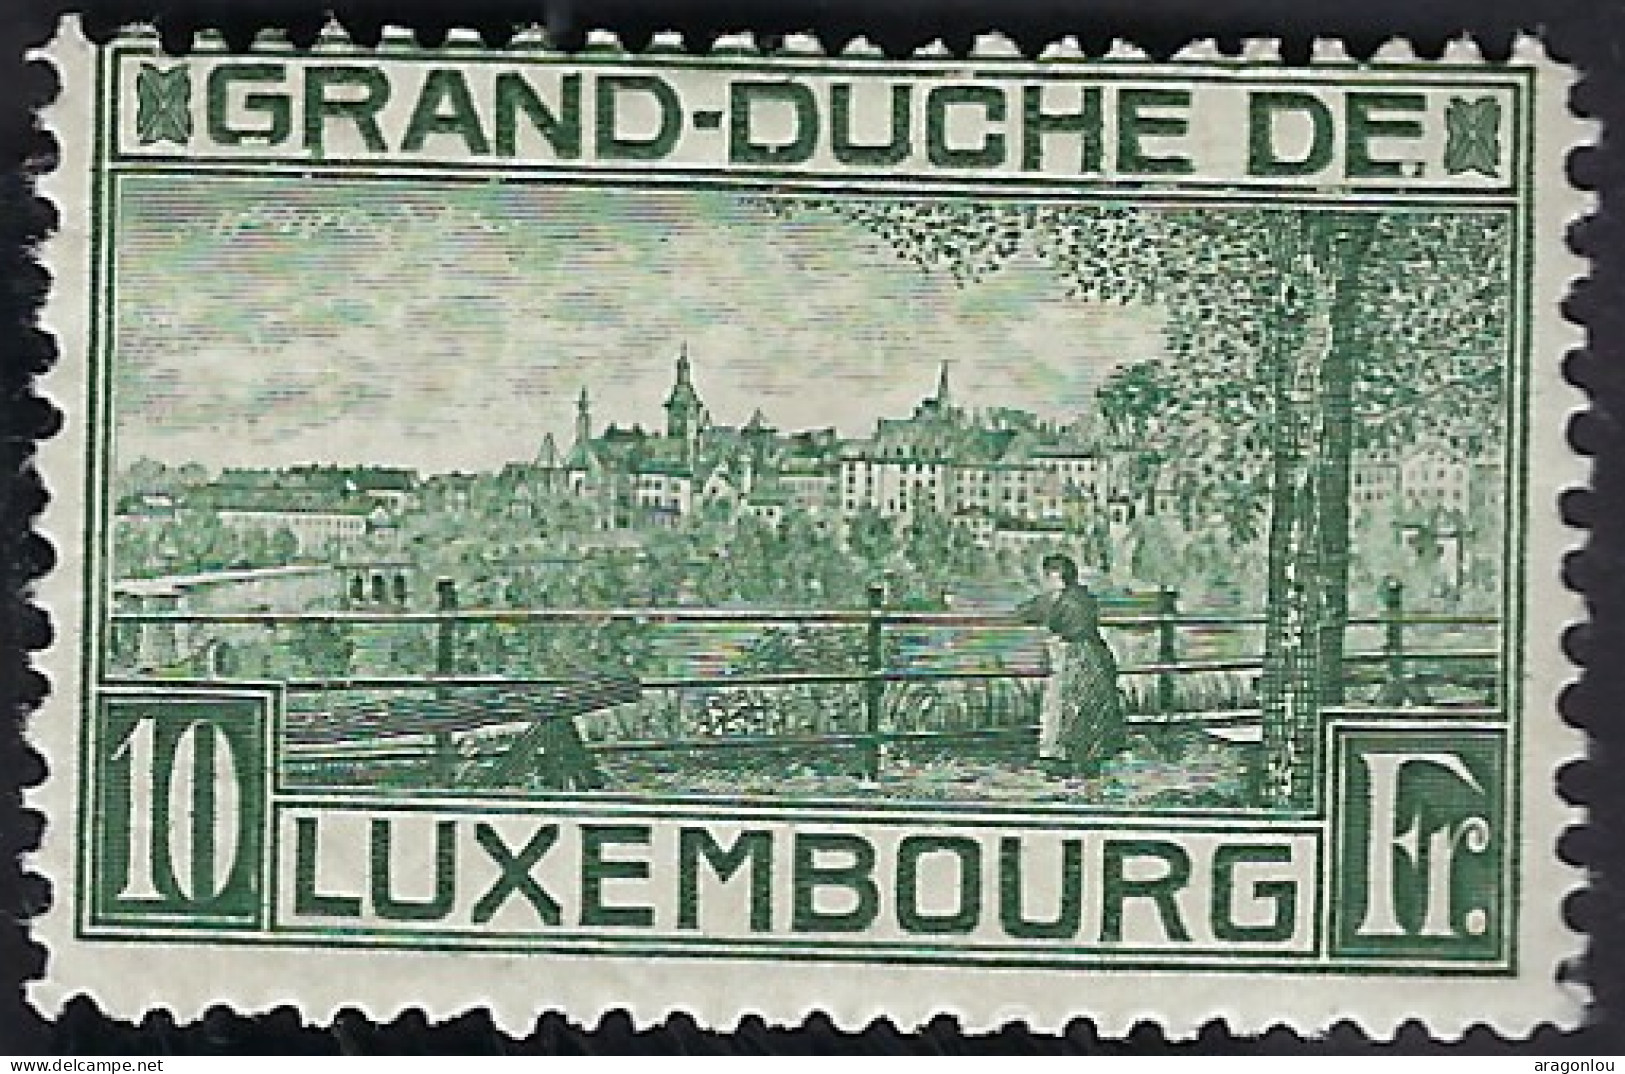 Luxembourg - Luxemburg - Timbre   1923   Naissance  Princesse Elisabeth   Michel 142   *   VC. 600,- Très Rare - Oblitérés